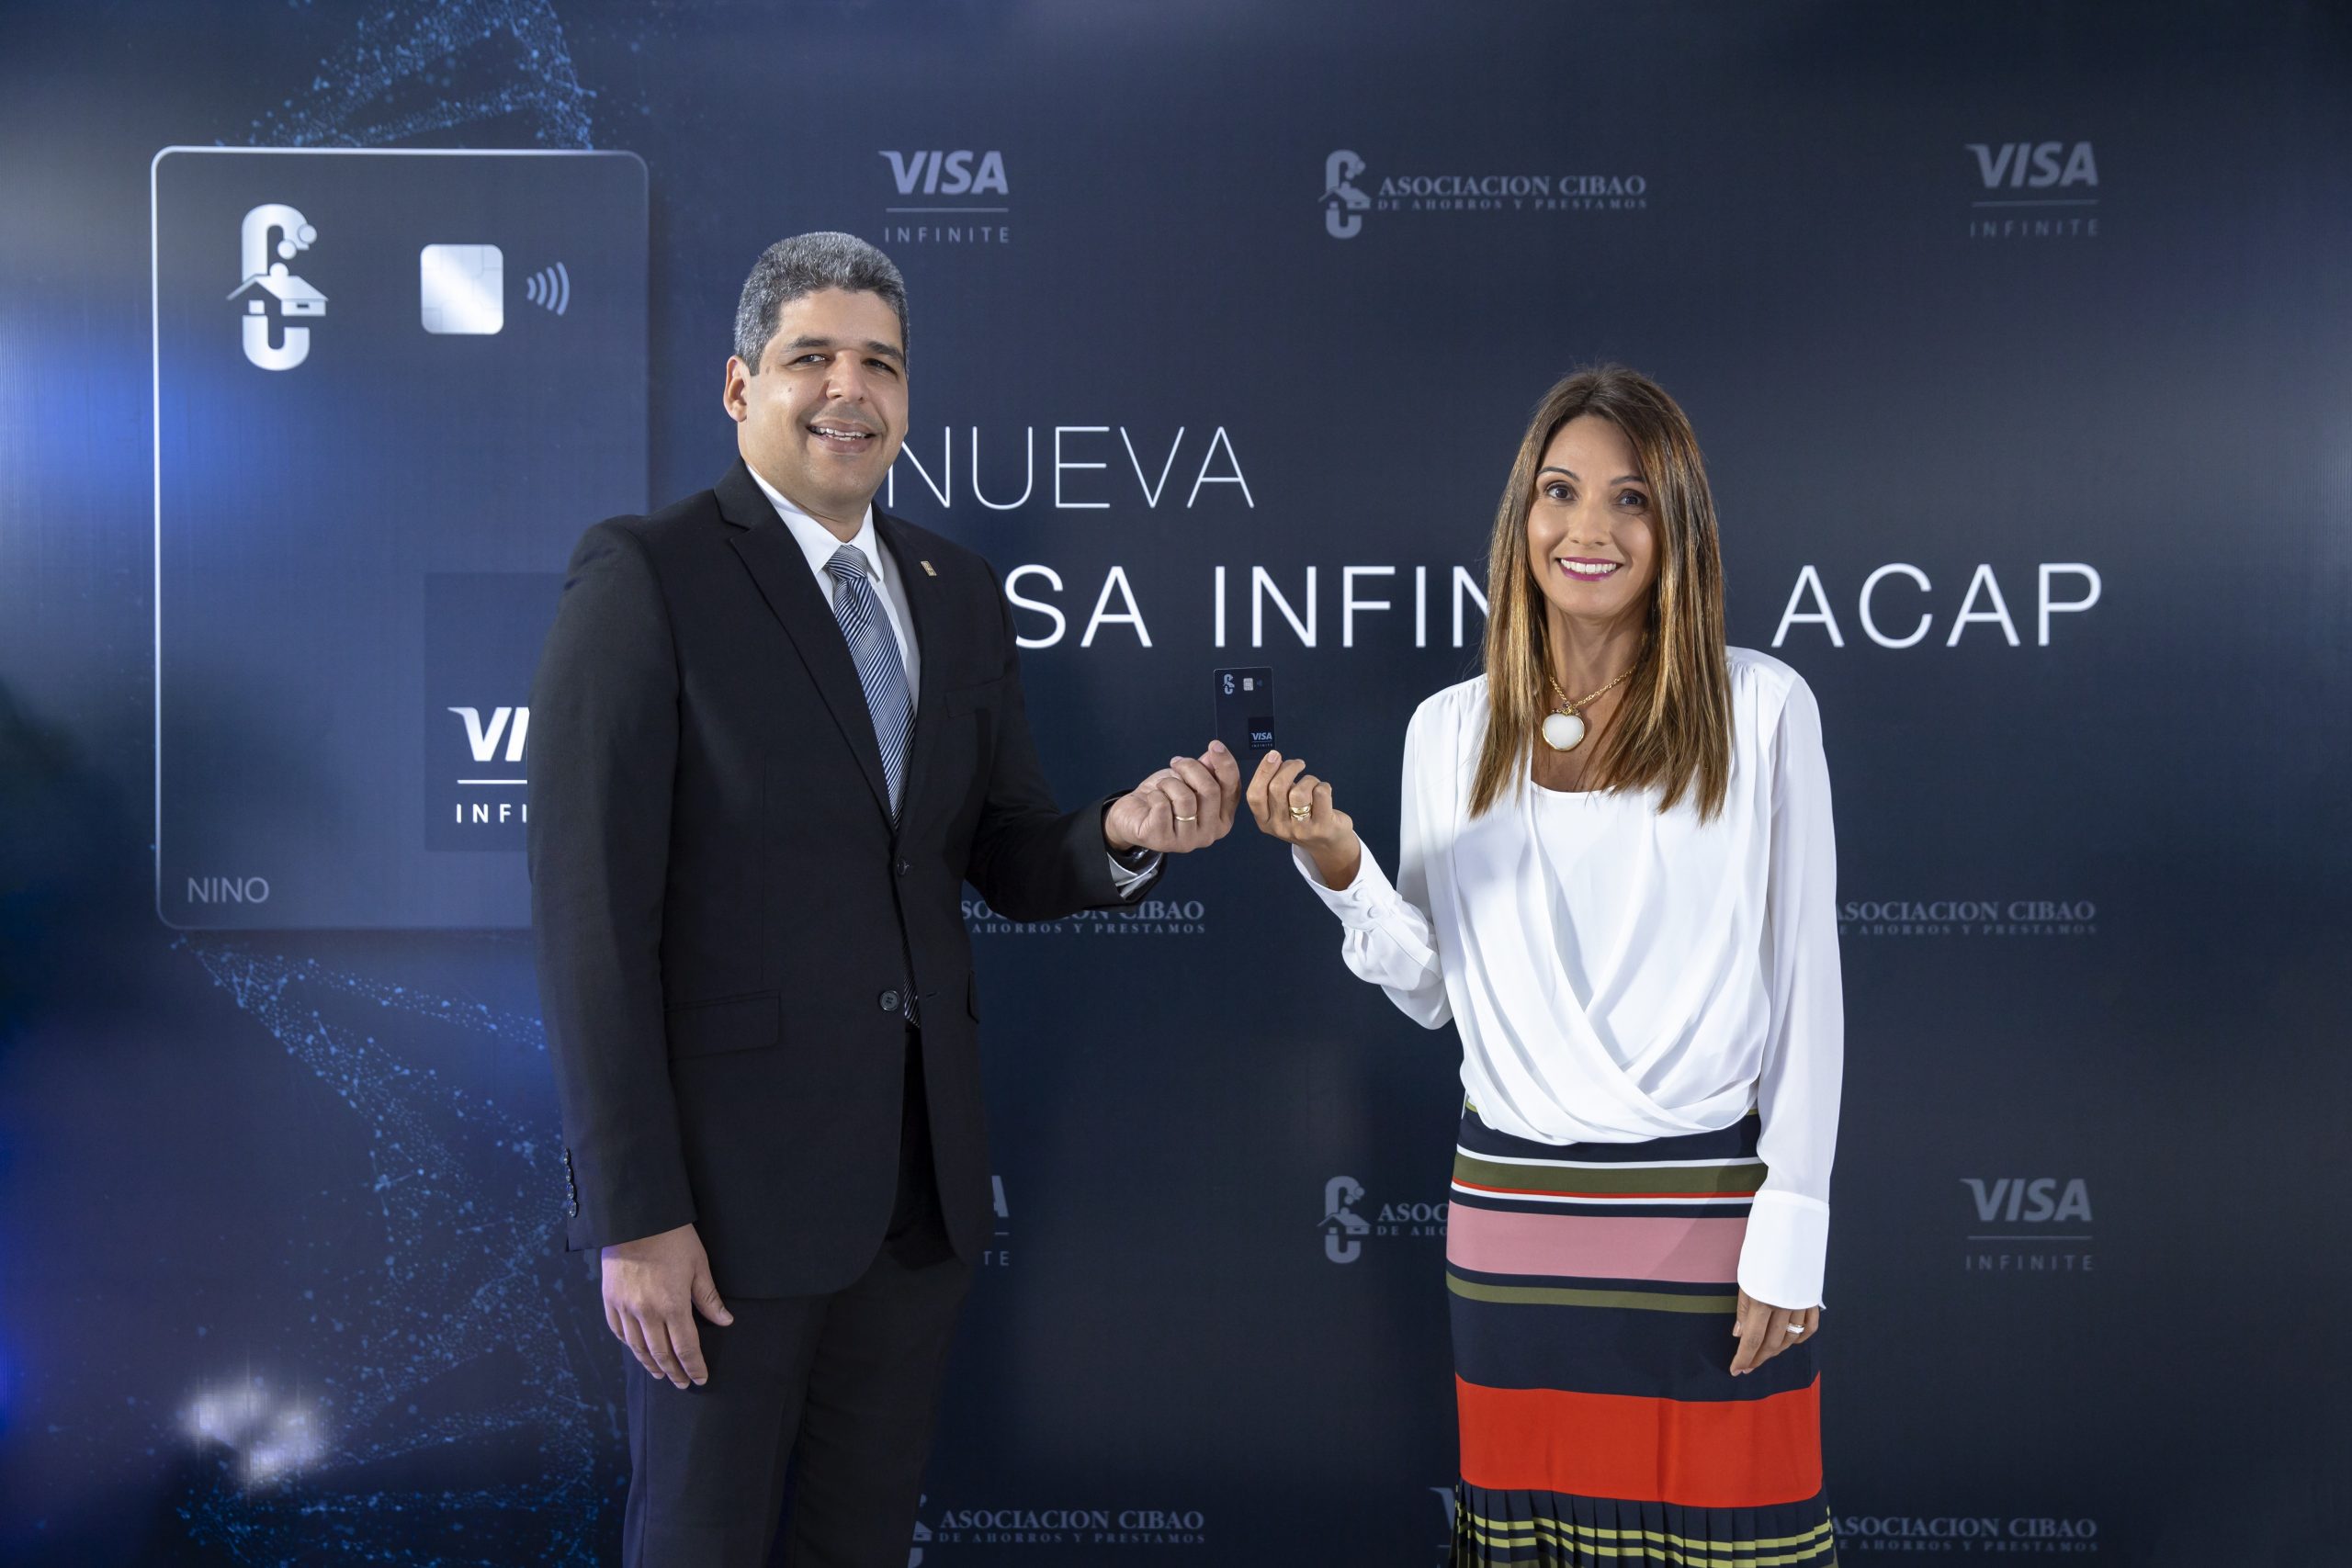 Asociación Cibao y Visa presentan tarjeta de crédito Infinite